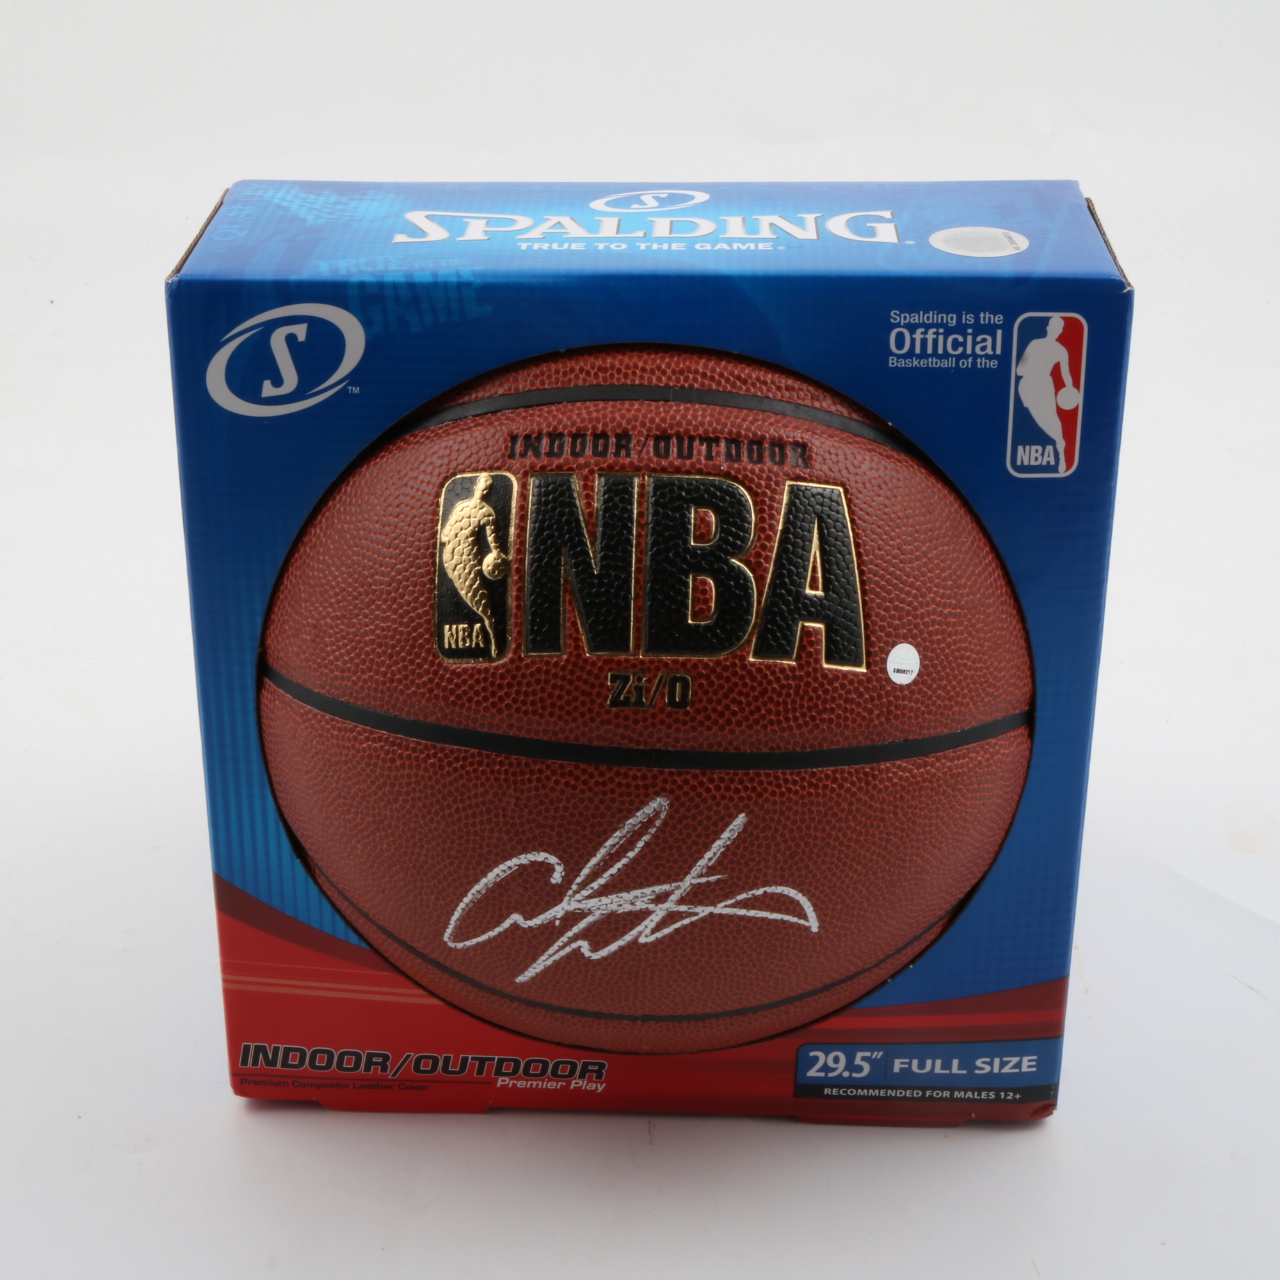 Magic Johnson Autographed Basketball - NBA Leather Game Ball